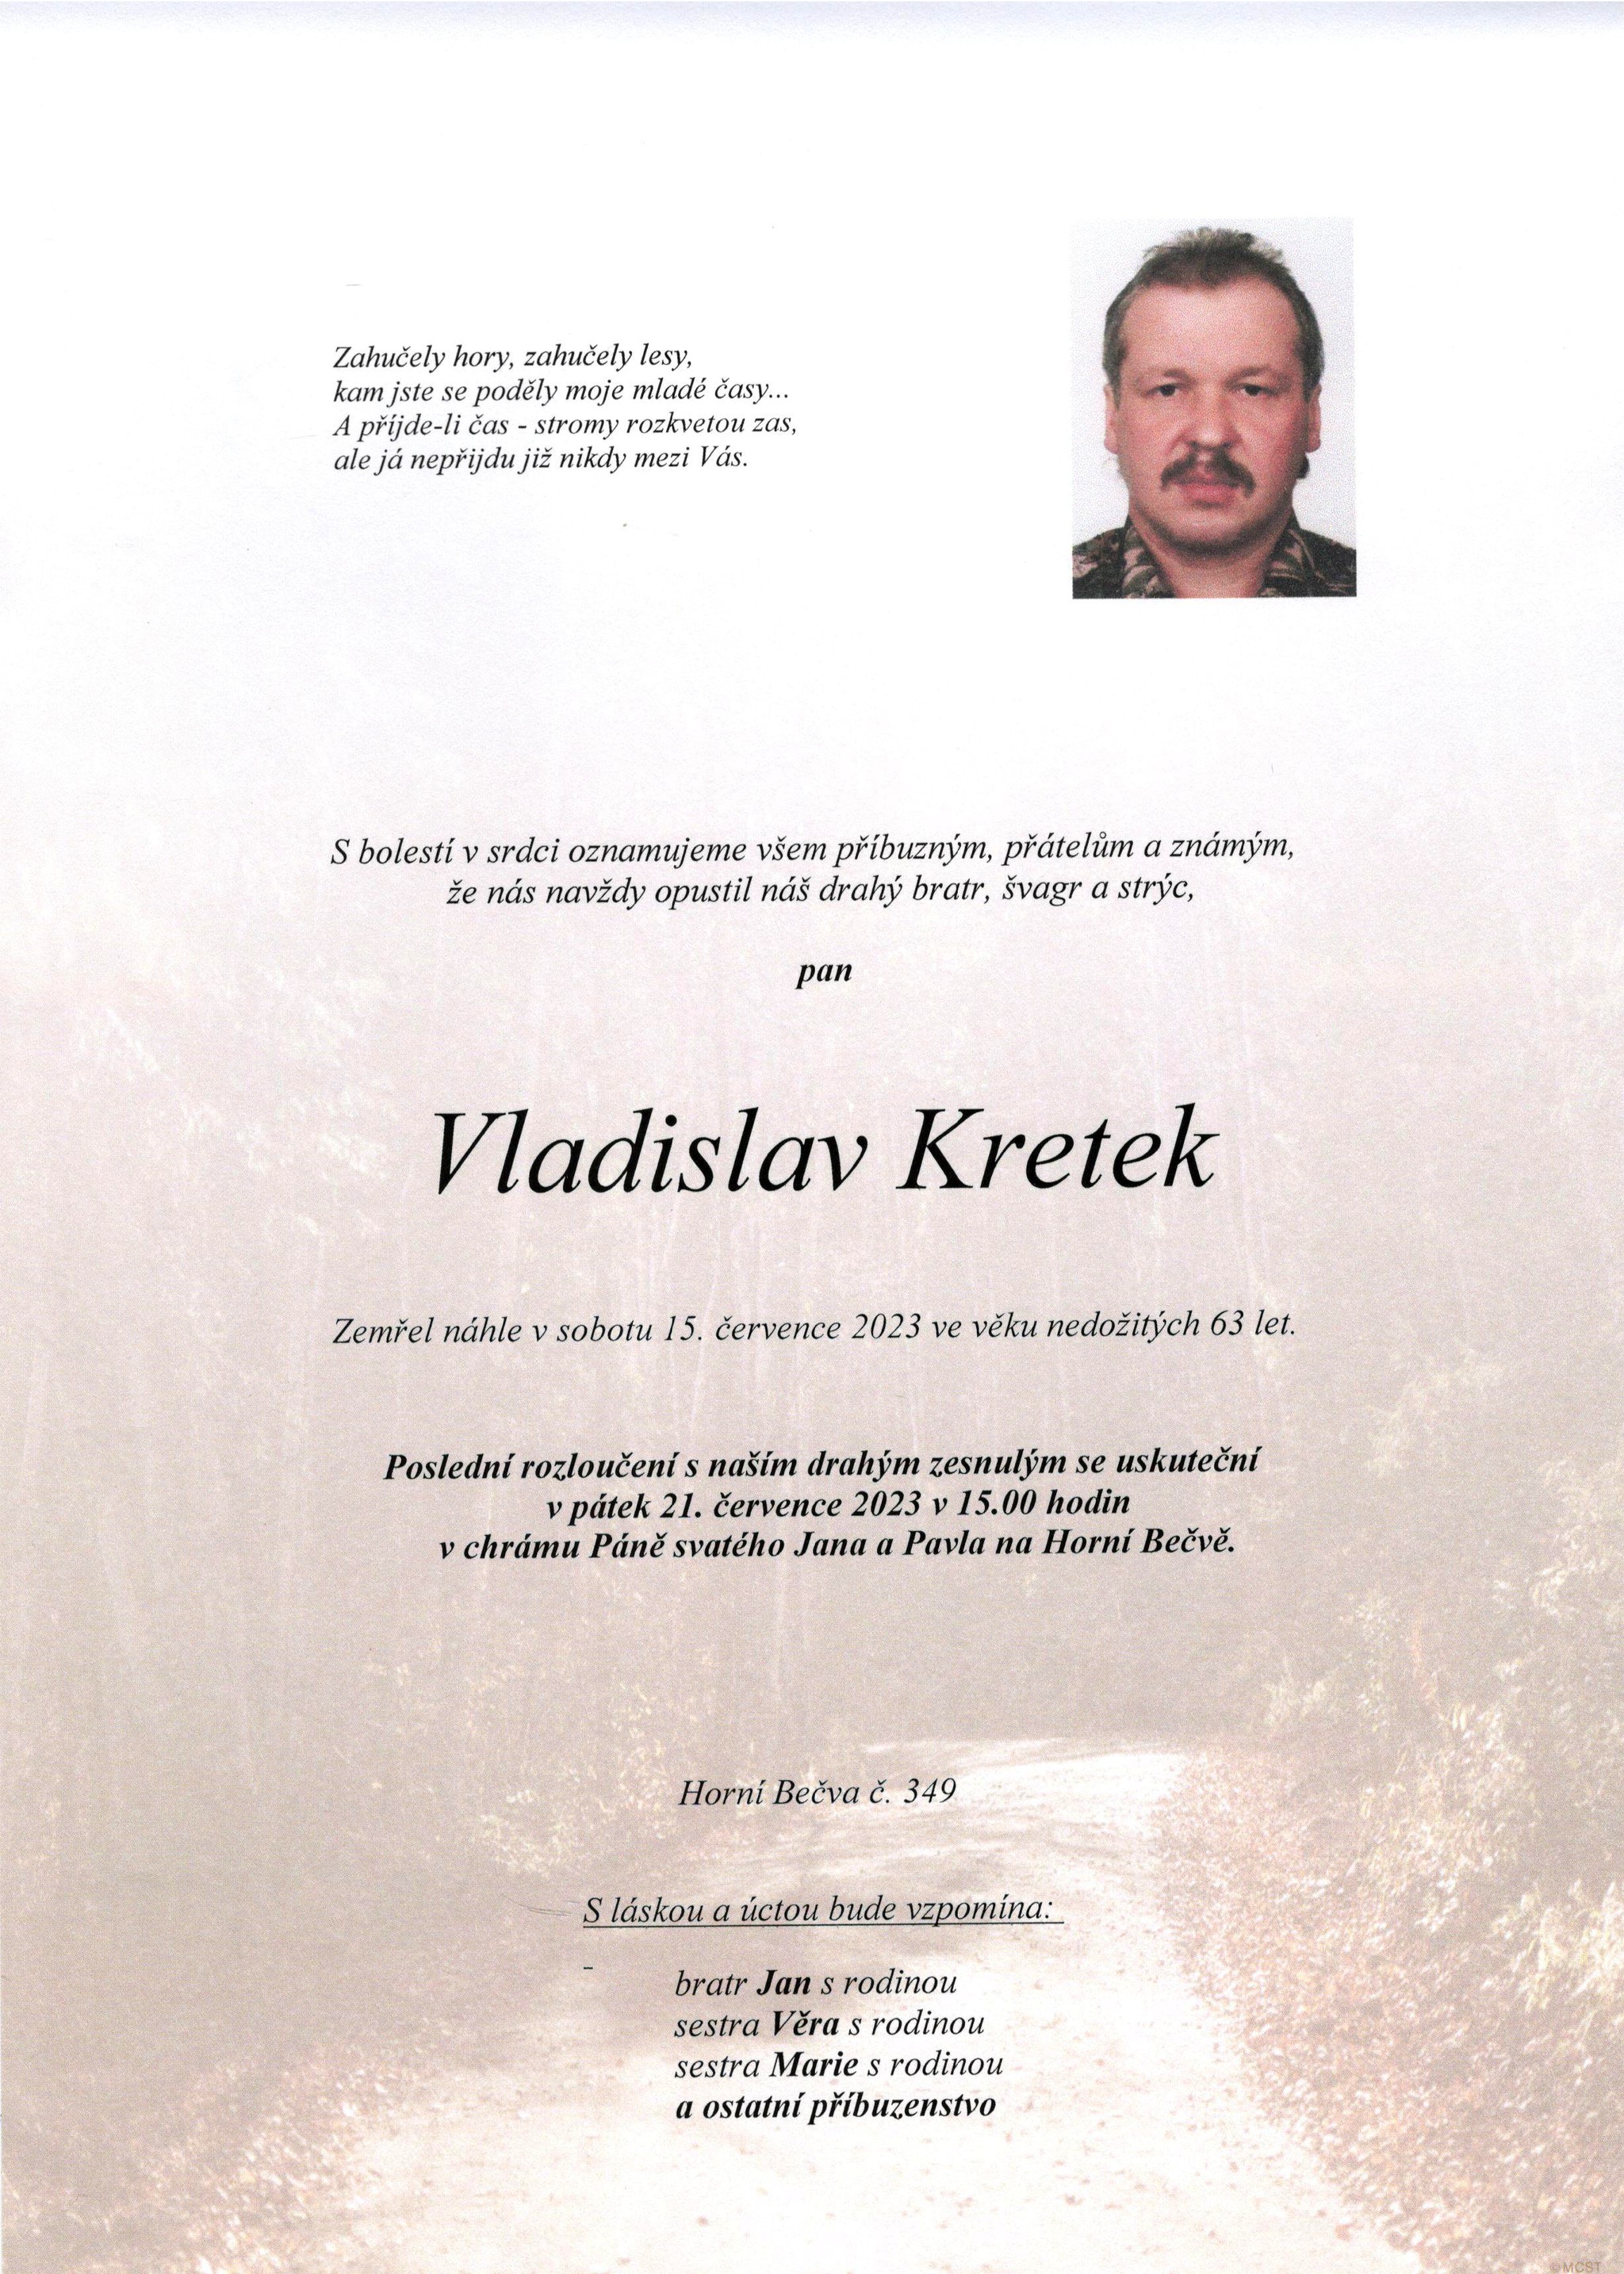 Vladislav Kretek